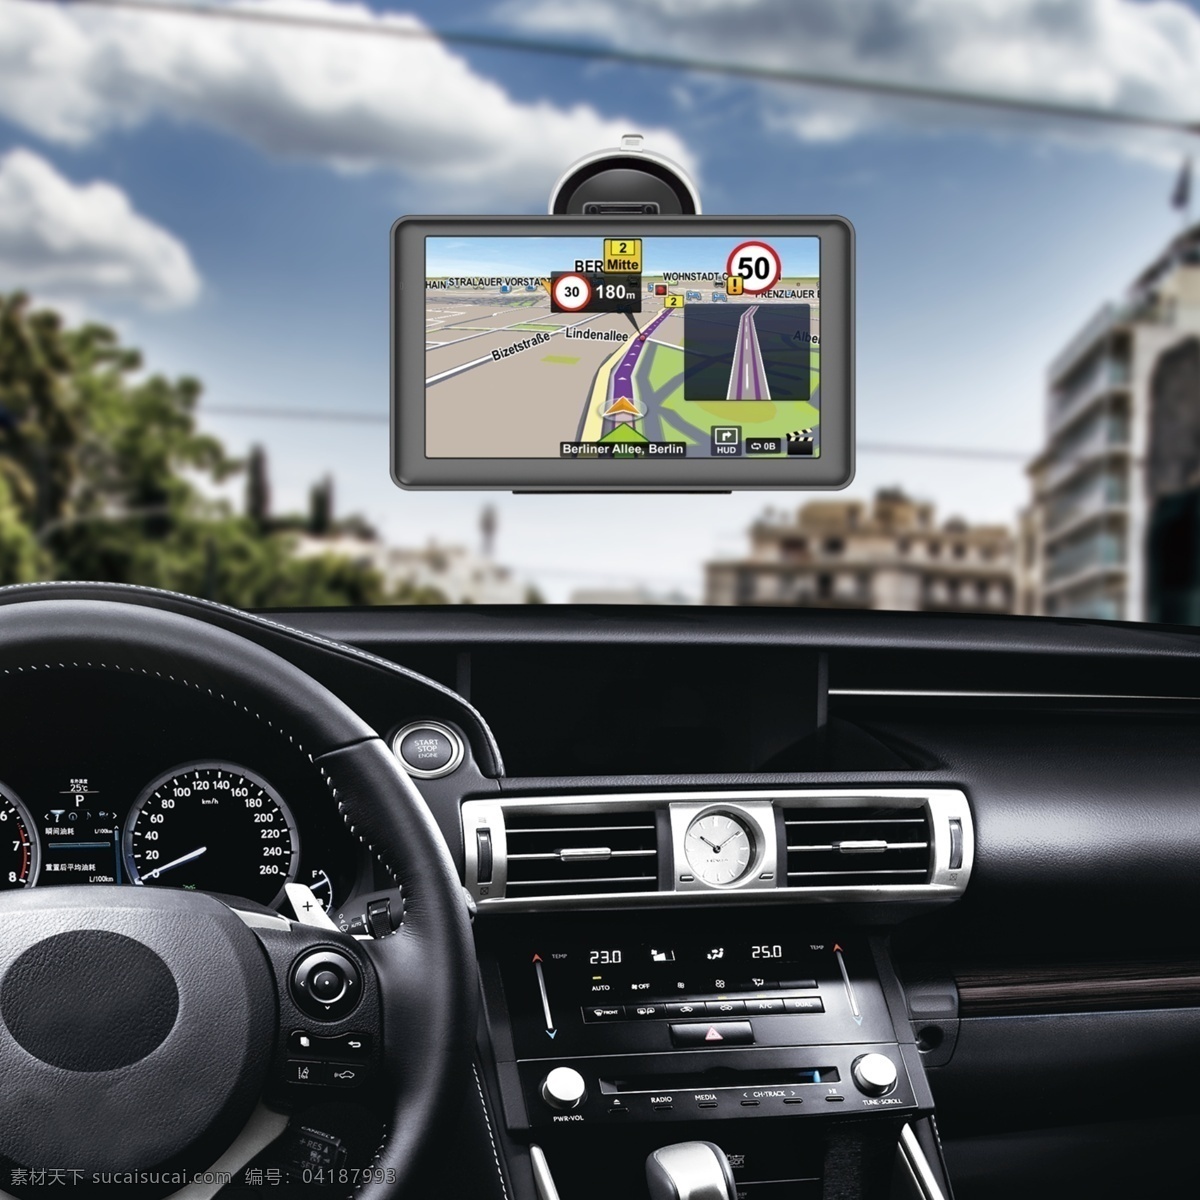 车内 车 导航 挡风玻璃 gps 汽车 汽车驾驶室 车载导航仪 车载 驾驶舱 在路上 现代科技 数码产品